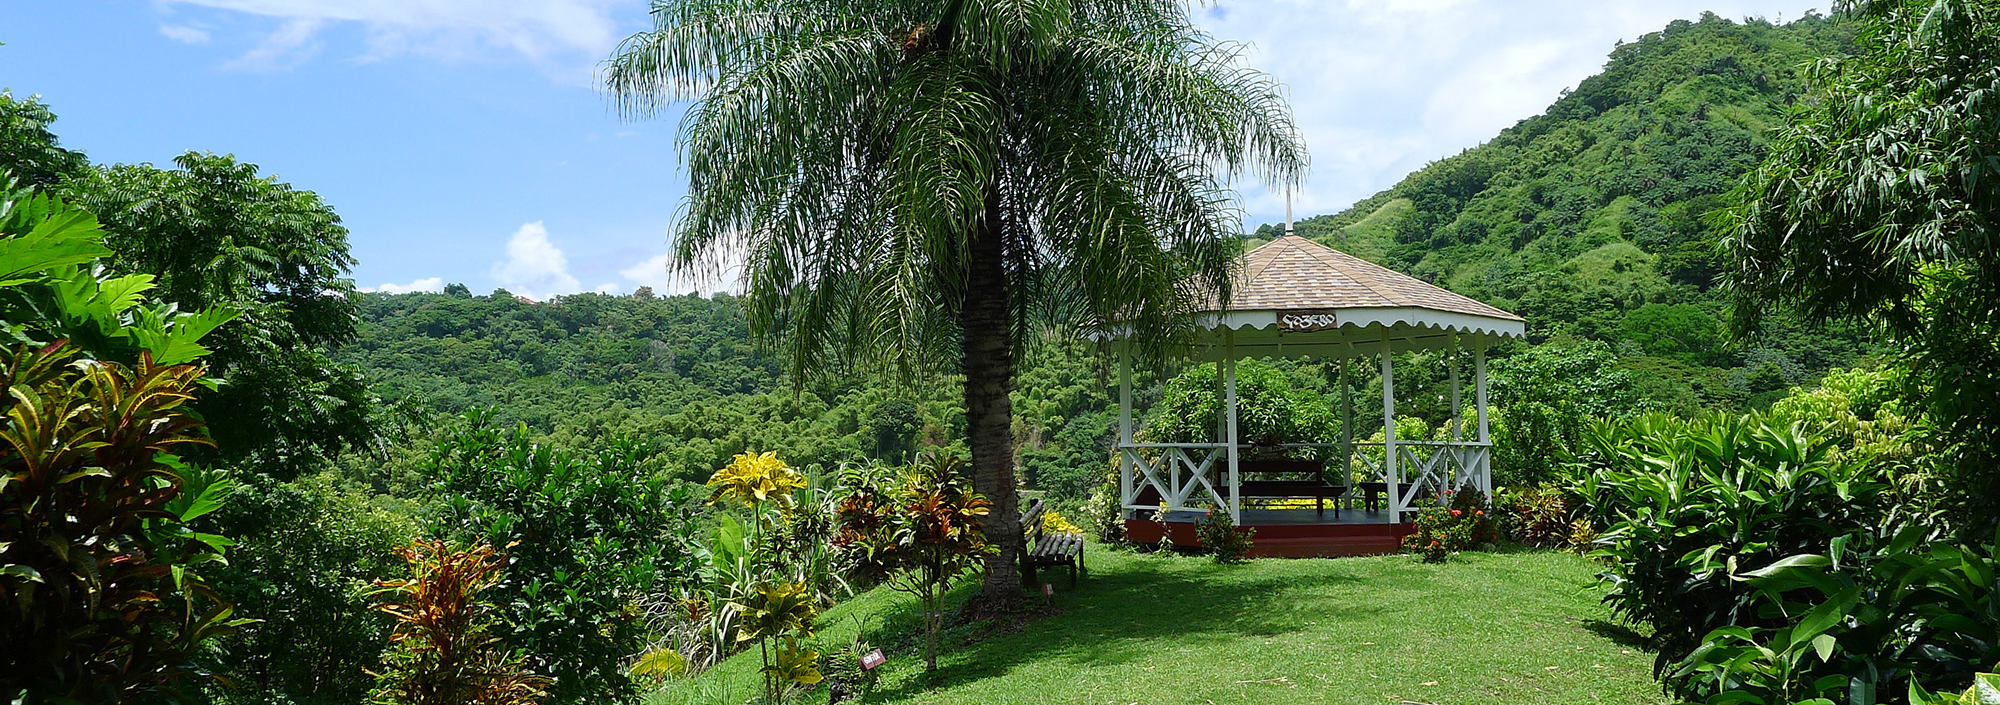 Rastplatz in der Natur auf Tobago